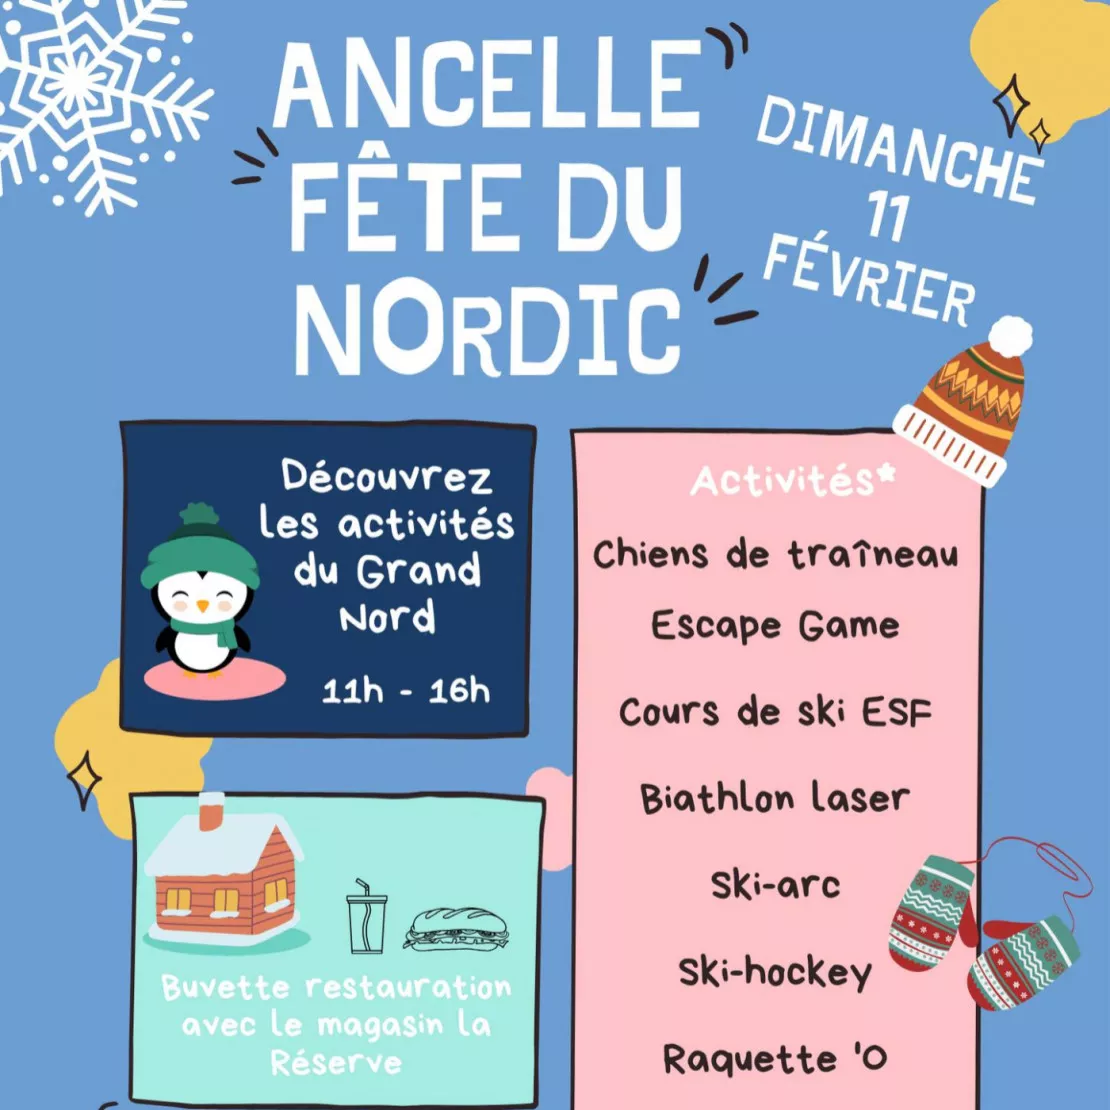 Alpes 1 & Vous : Fête du Nordic et diverses animations gratuites à Ancelle en février